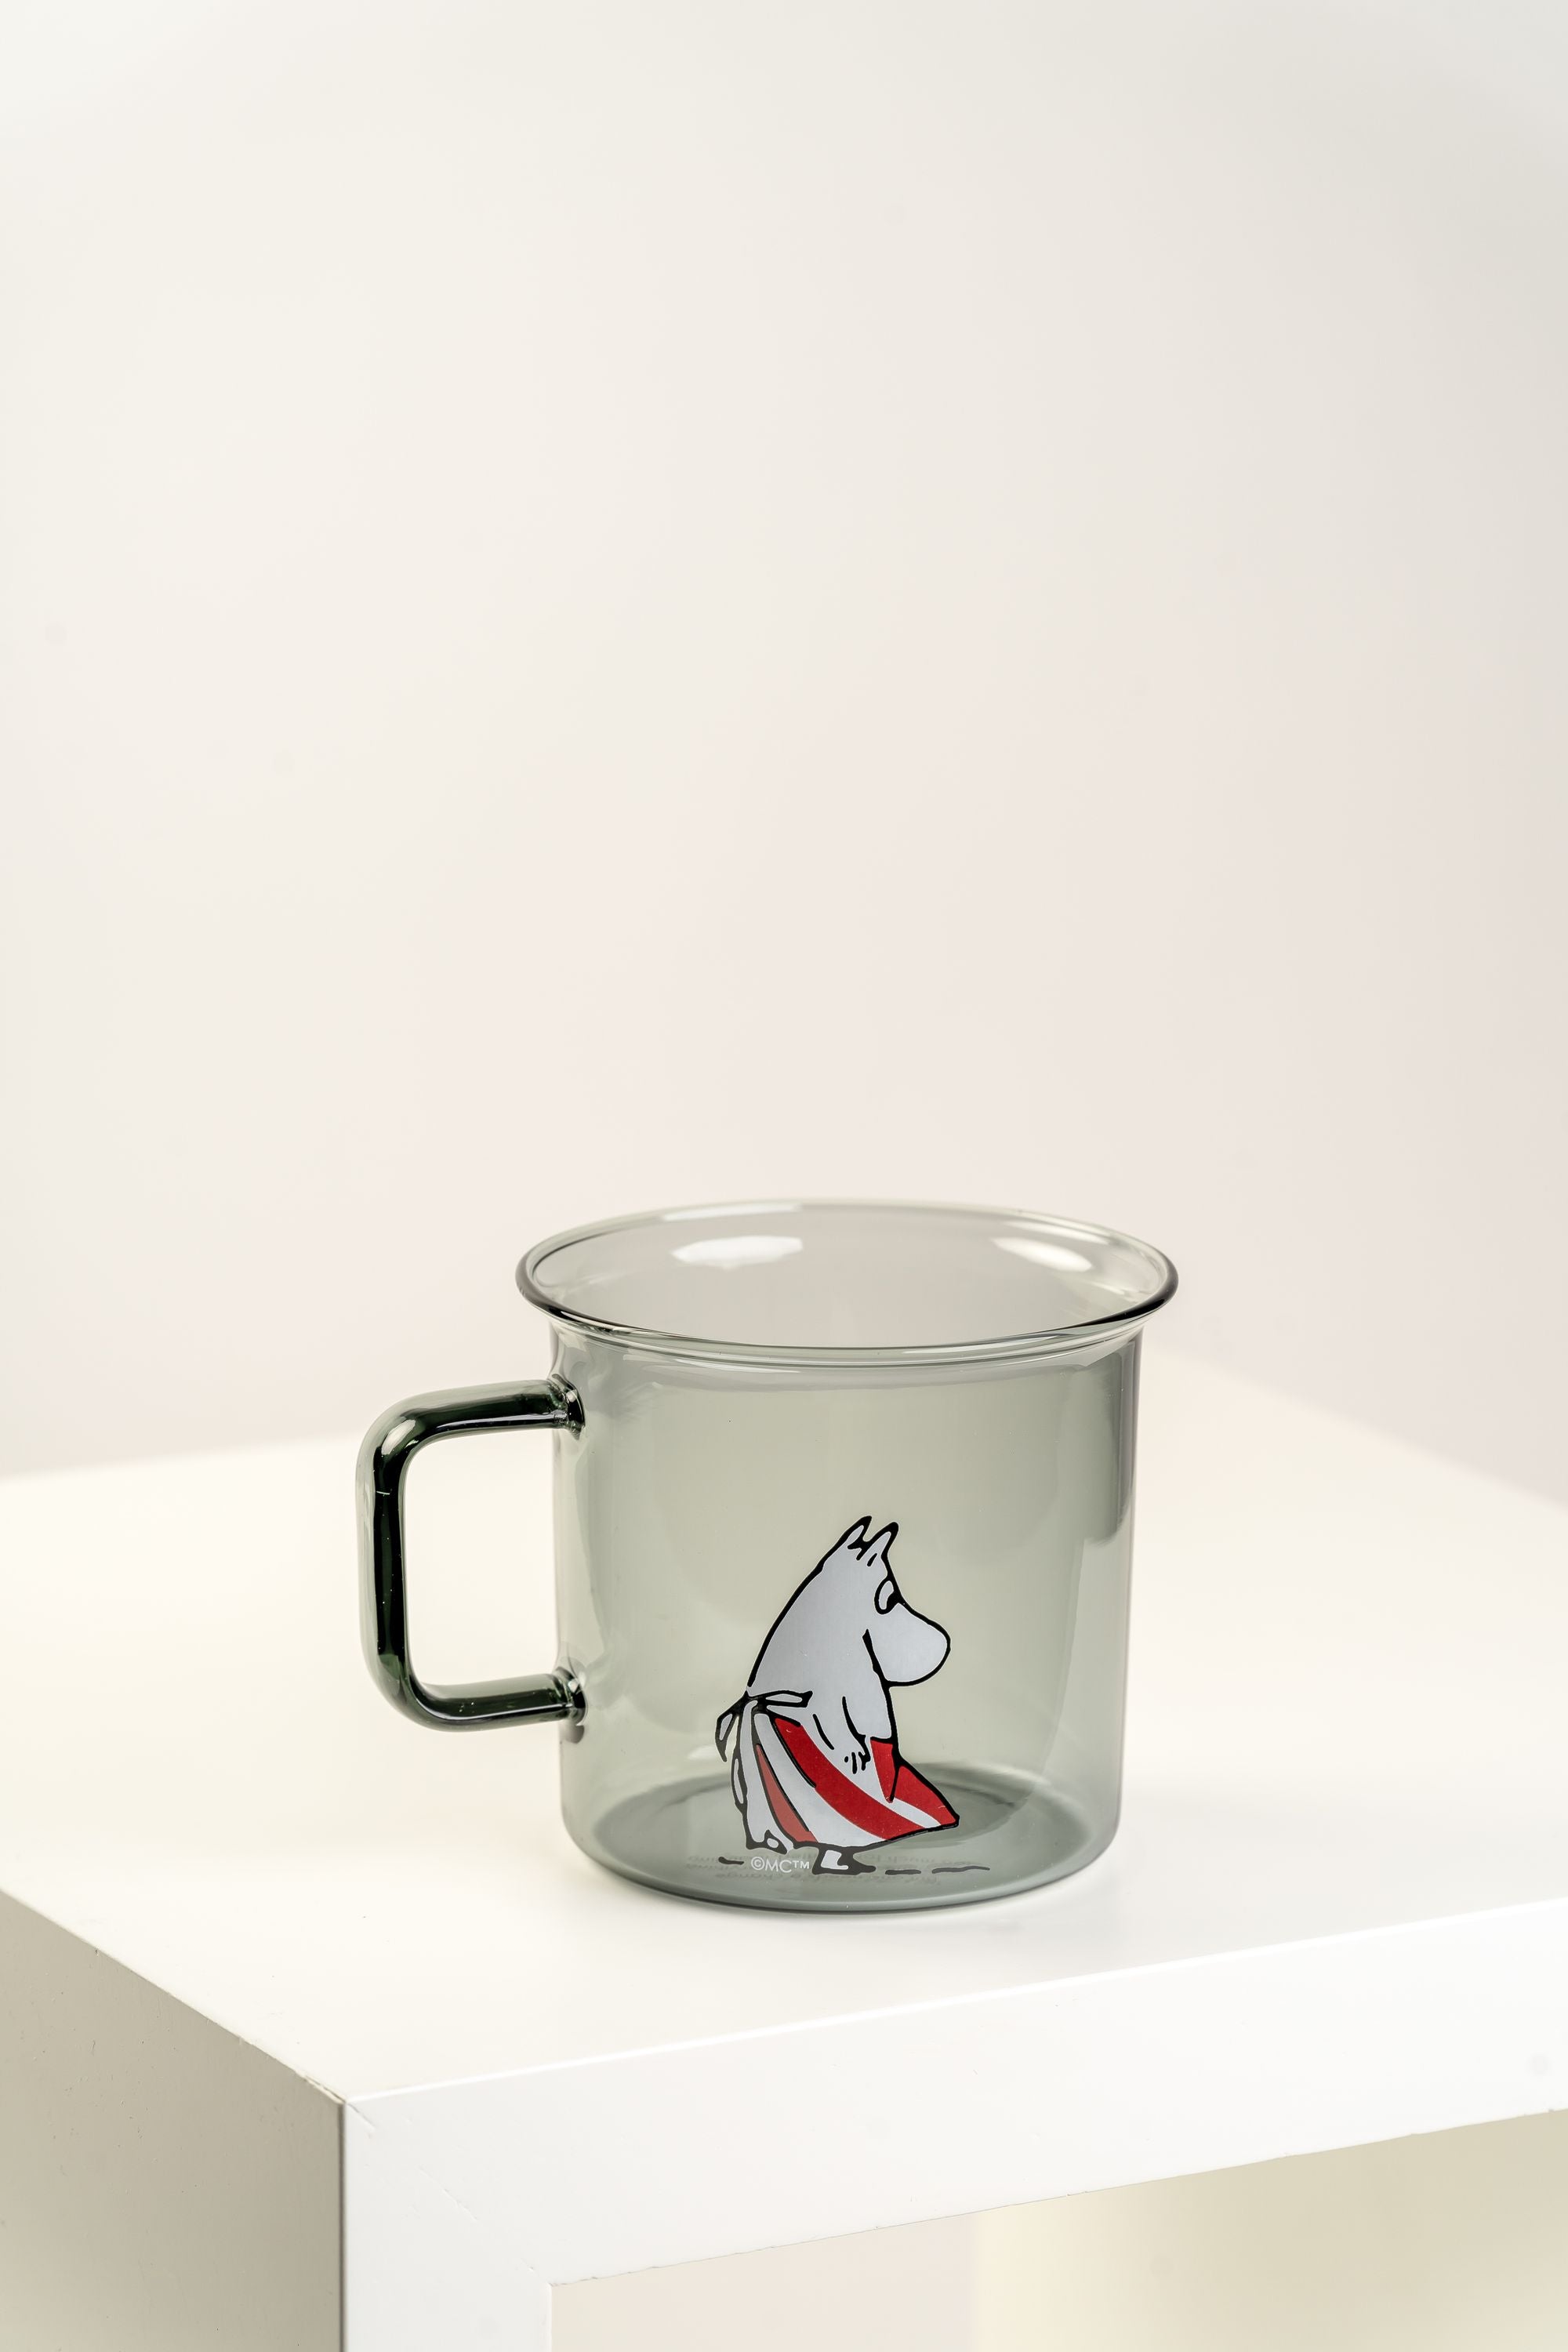 Muurla Moomin Glass Mug, Moominmamma